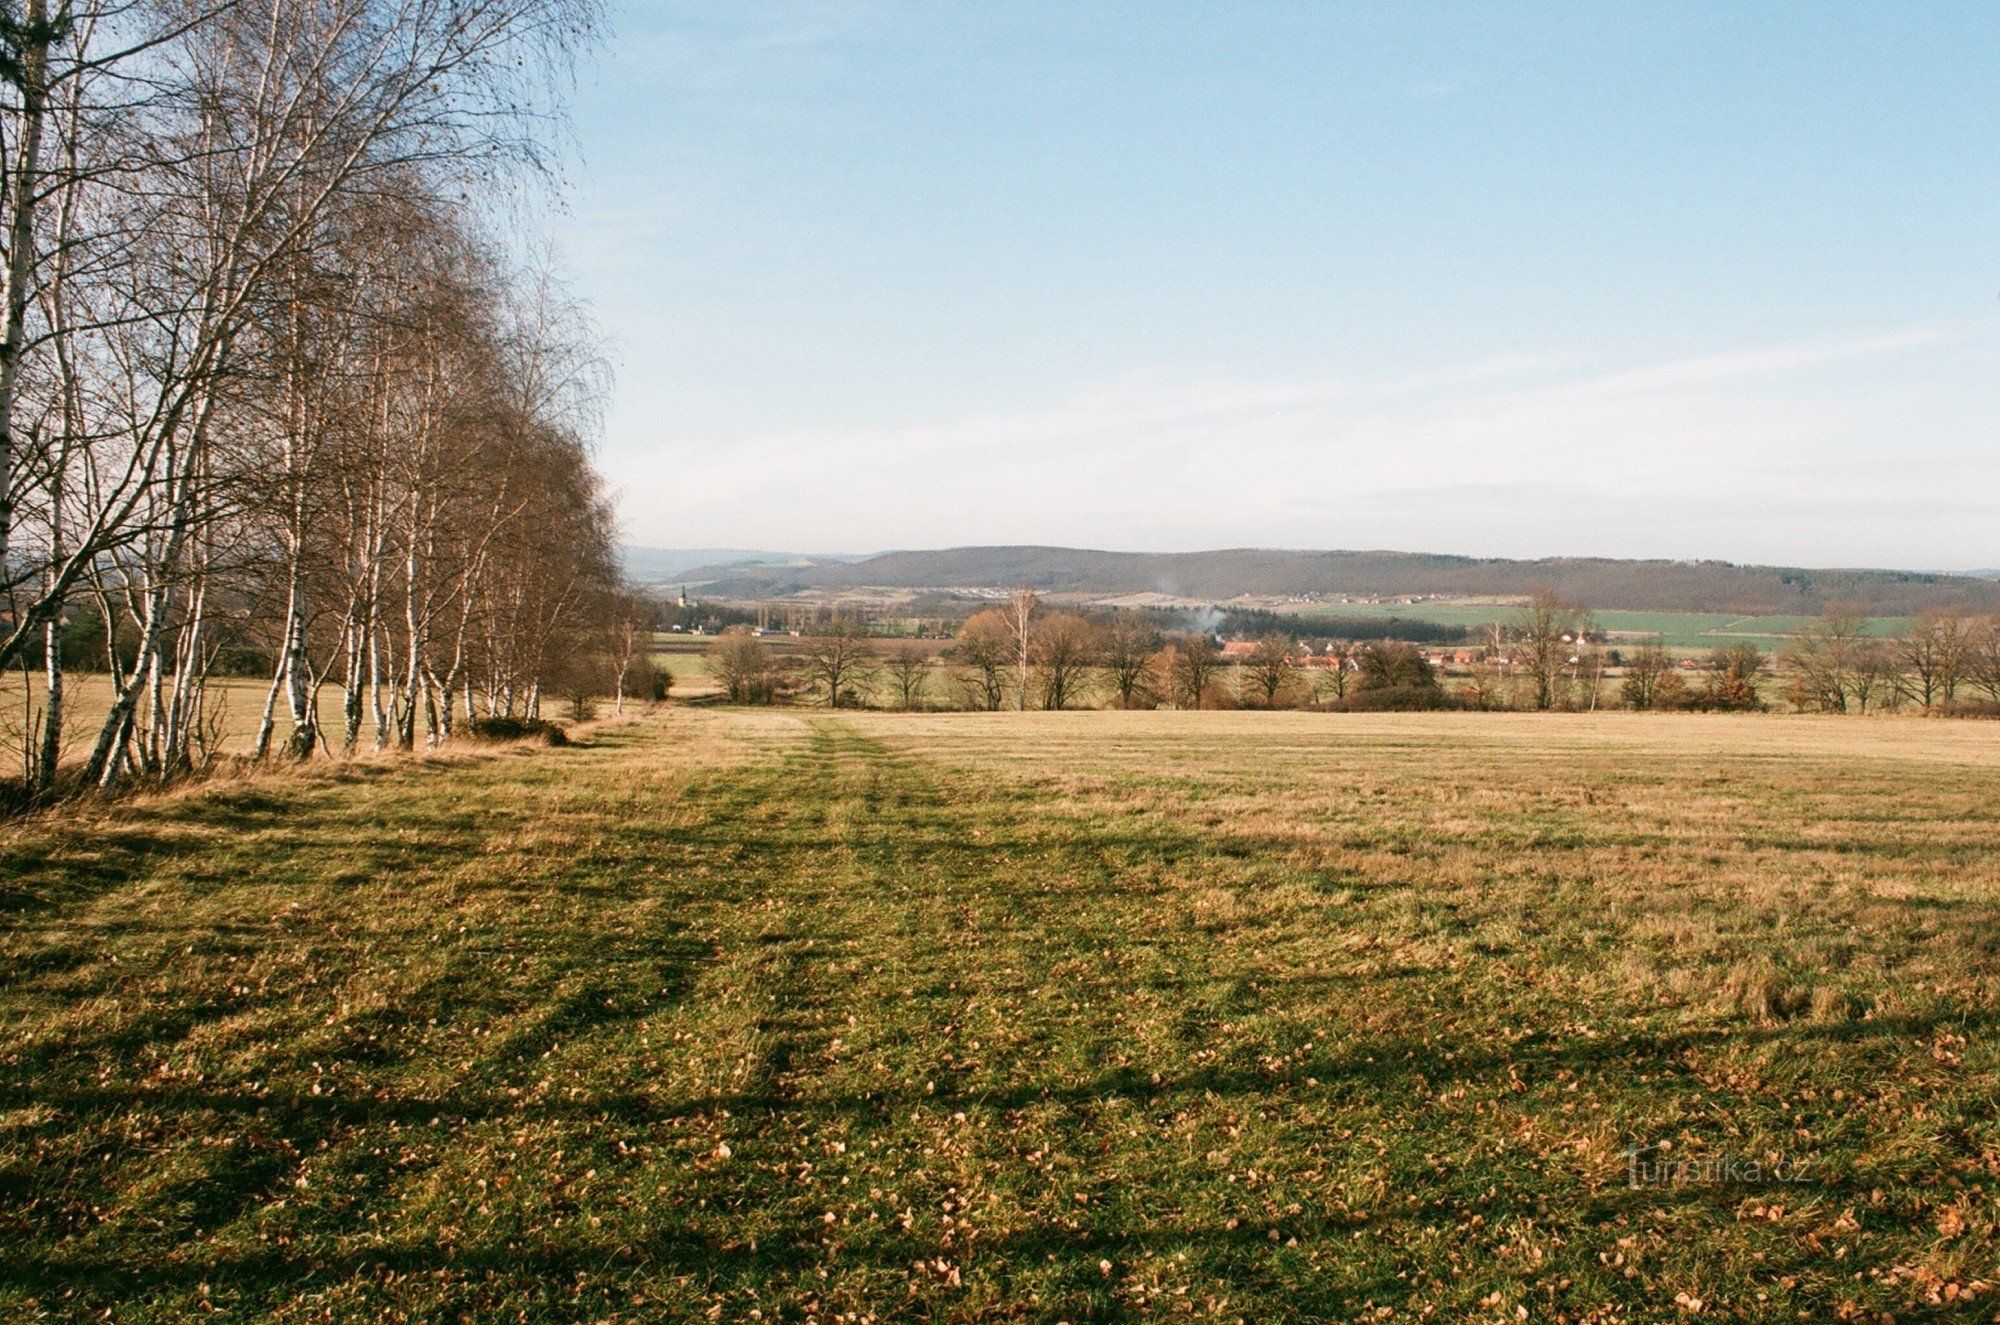 θέα προς την αντίθετη κατεύθυνση από το Hřebeny προς τα χωριά Podbrdy και Vižina